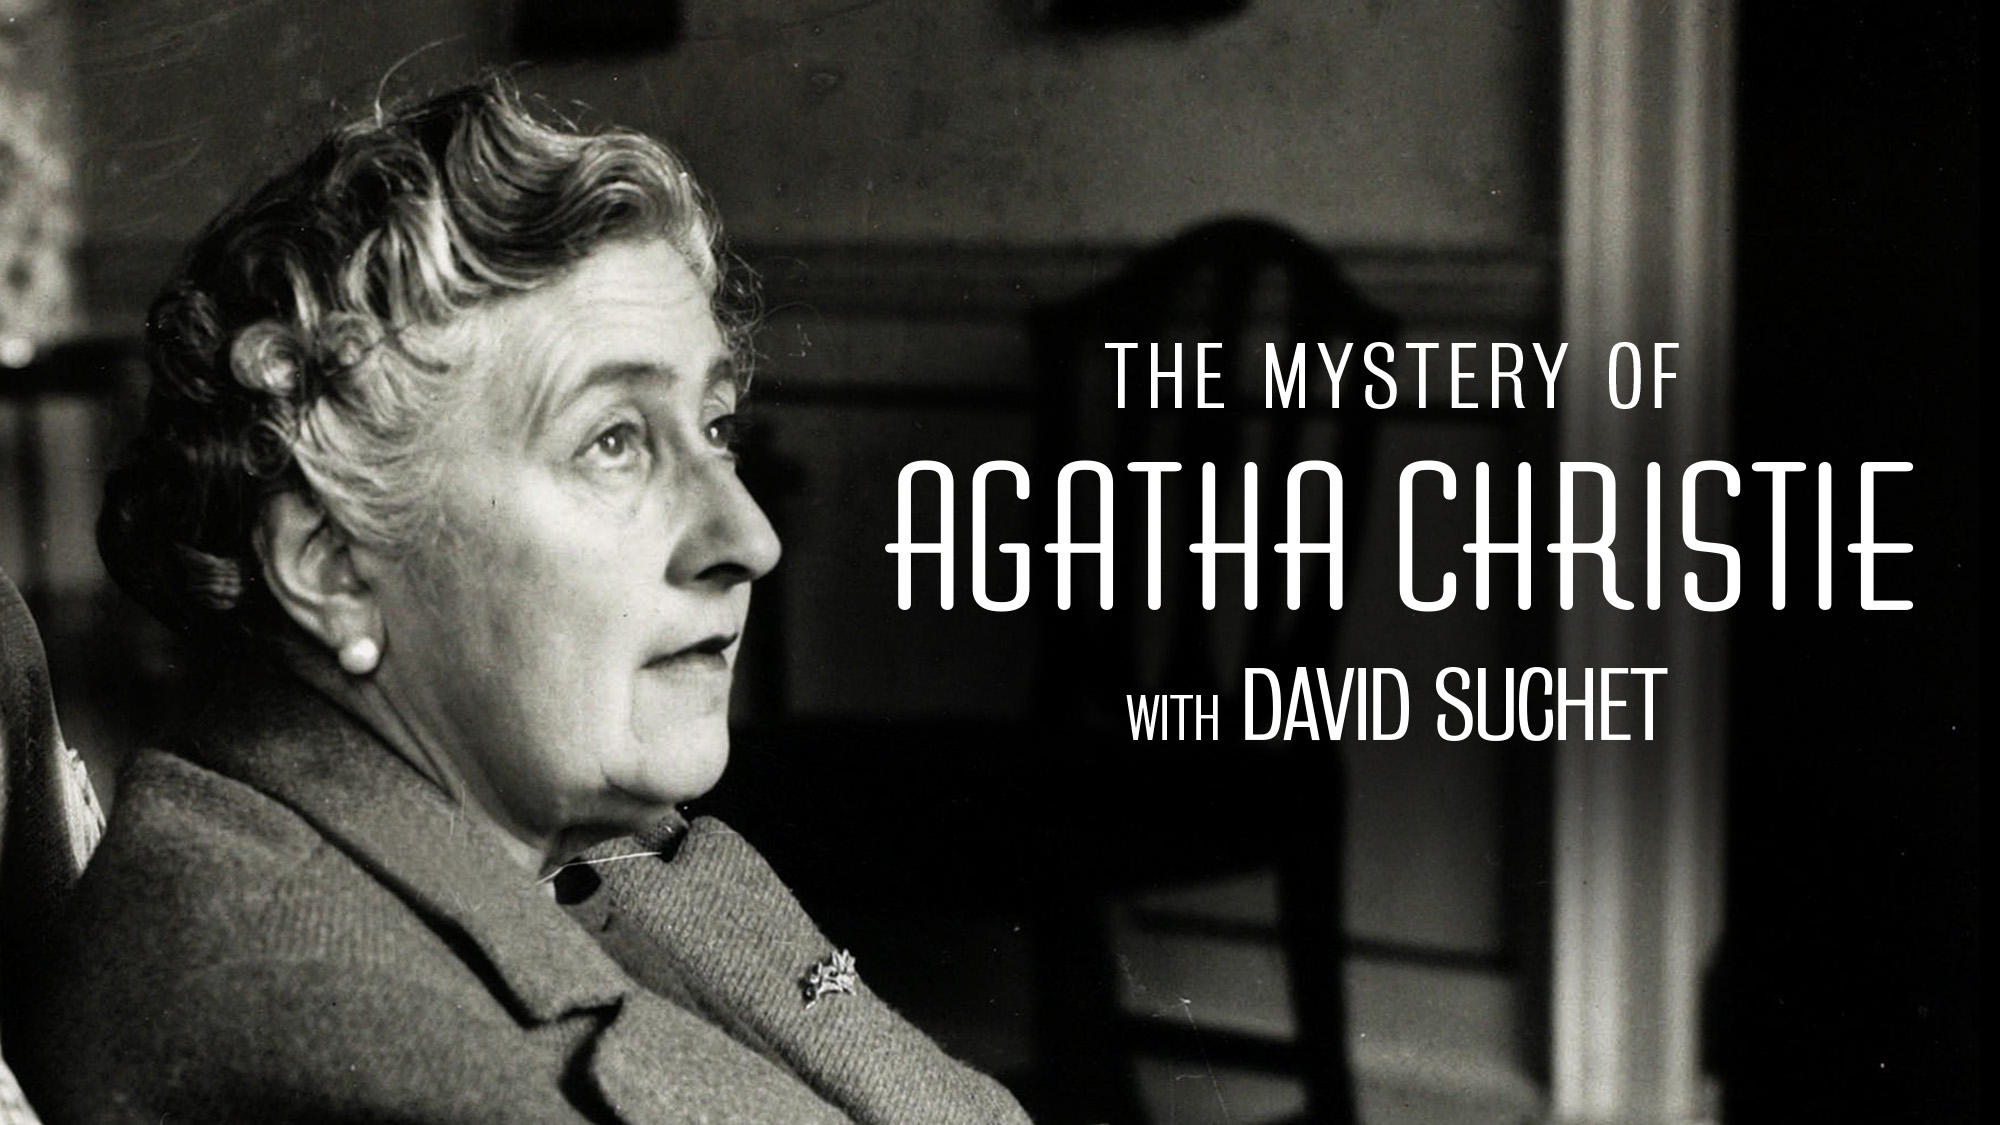 Agatha christie por qué no le preguntan a evans